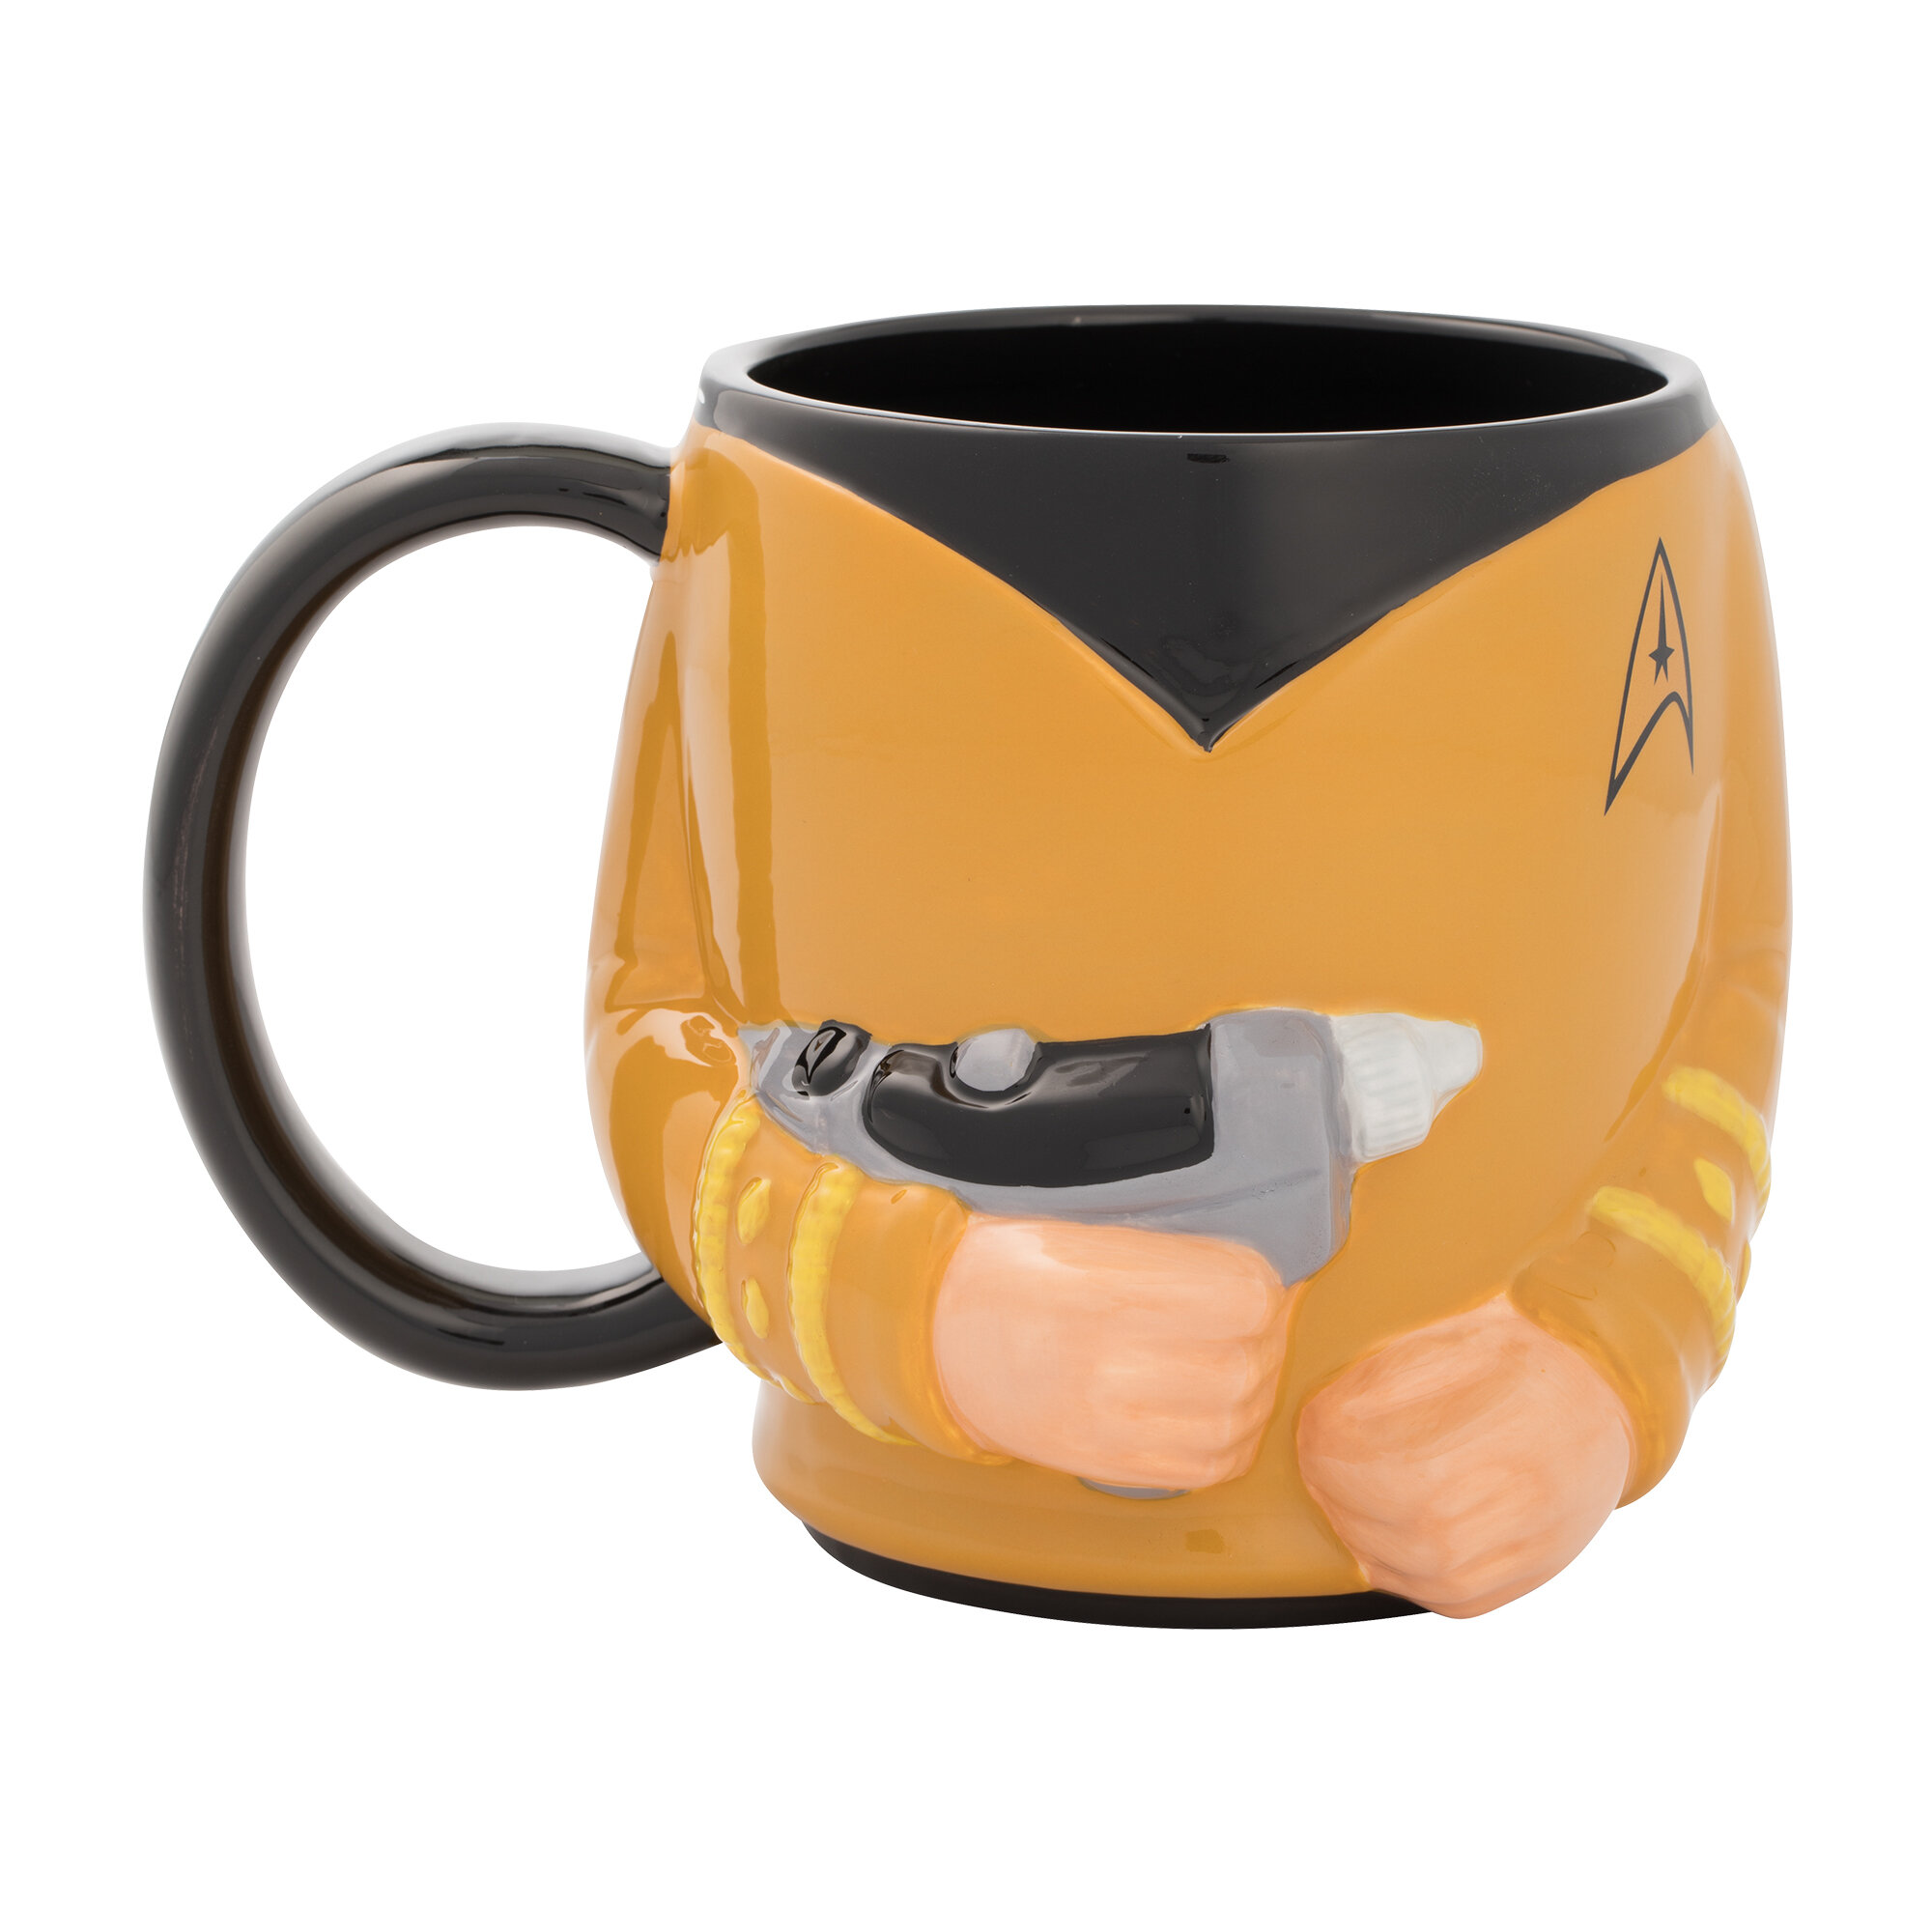 STAR TREK Sci Fi Movie TV Show Captain Kirk & Spock 12 oz CERAMIC COFFEE MUG New 